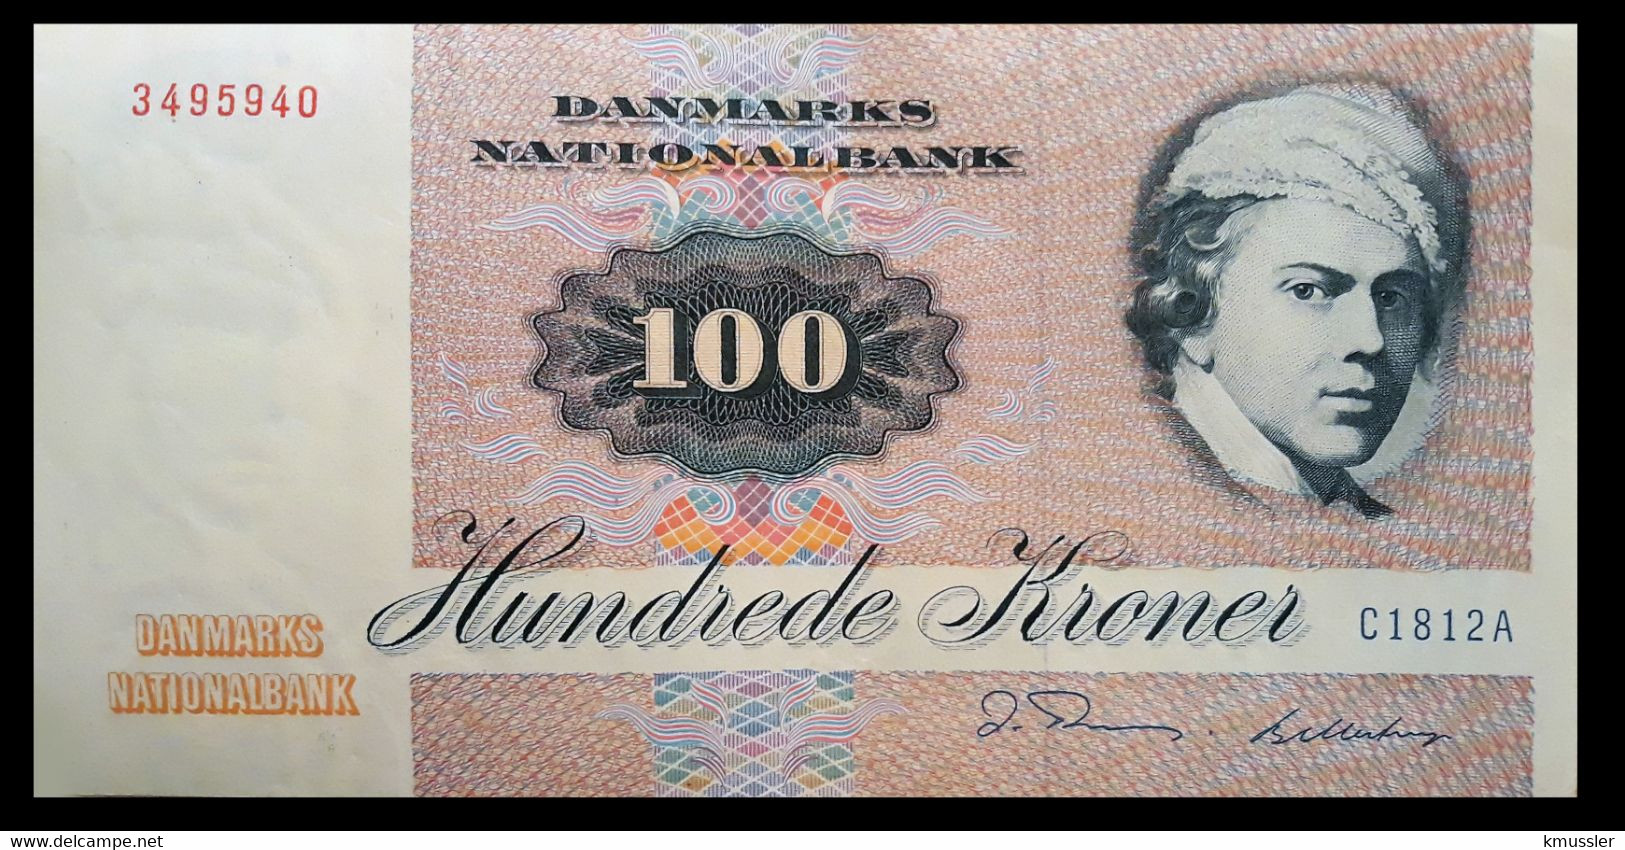 # # # Banknote Dänemark (Denmark) 100 Kroner 1981 # # # - Dänemark